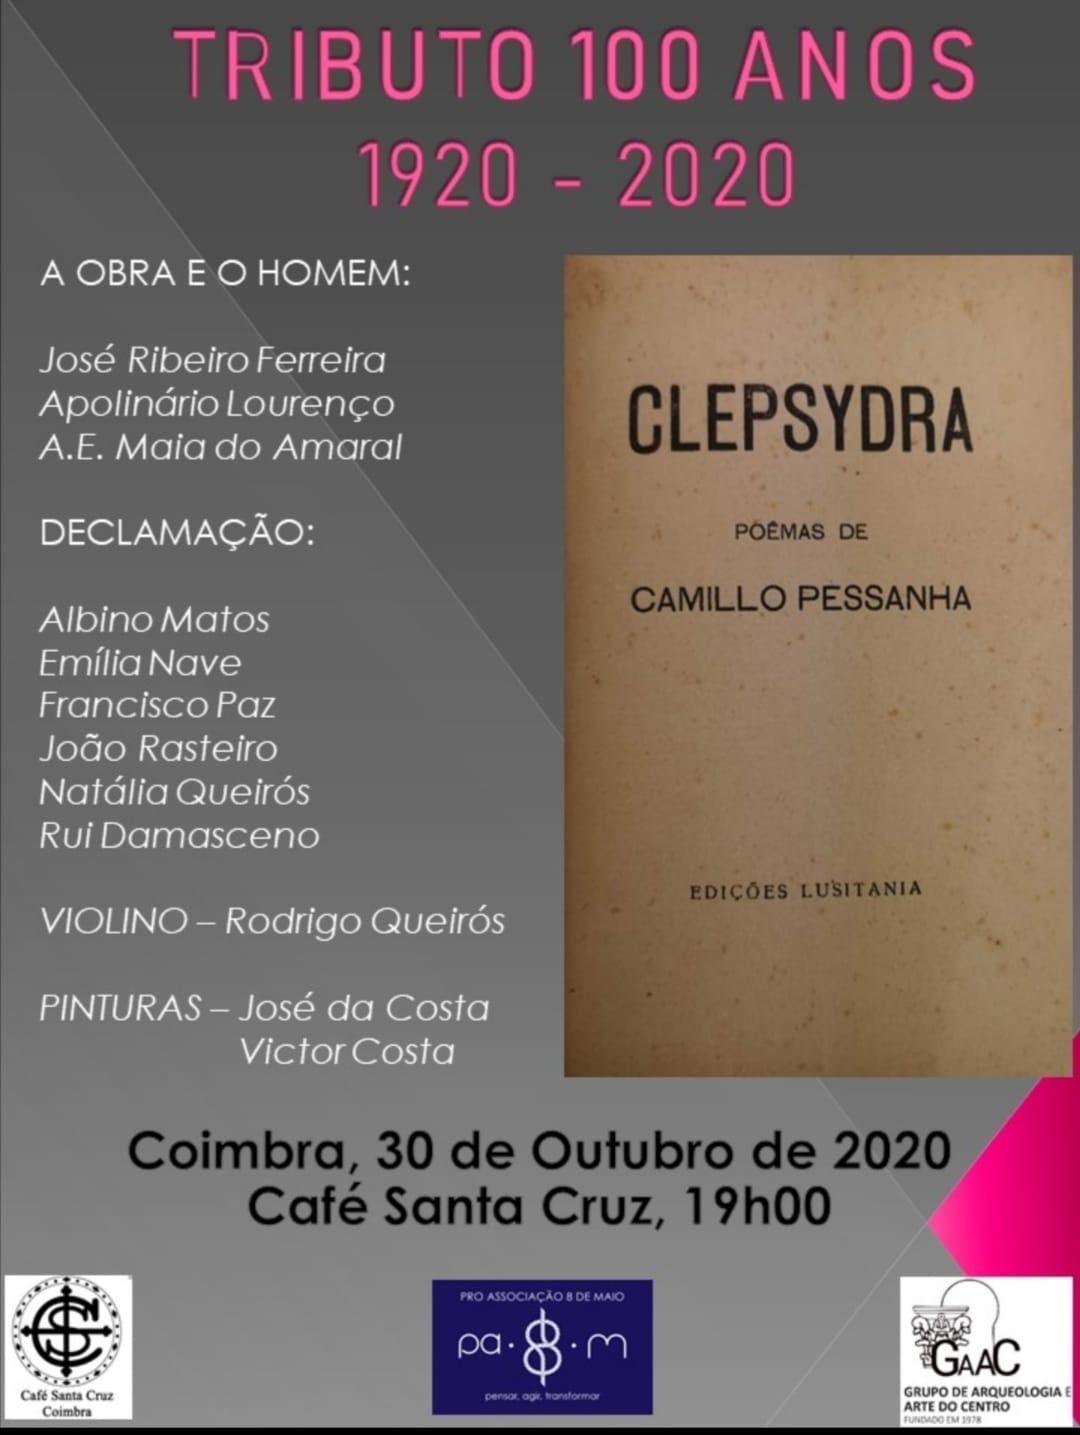 Tributo 100 anos_Clepsidra_301020_Café Santa Cruz_Coimbra